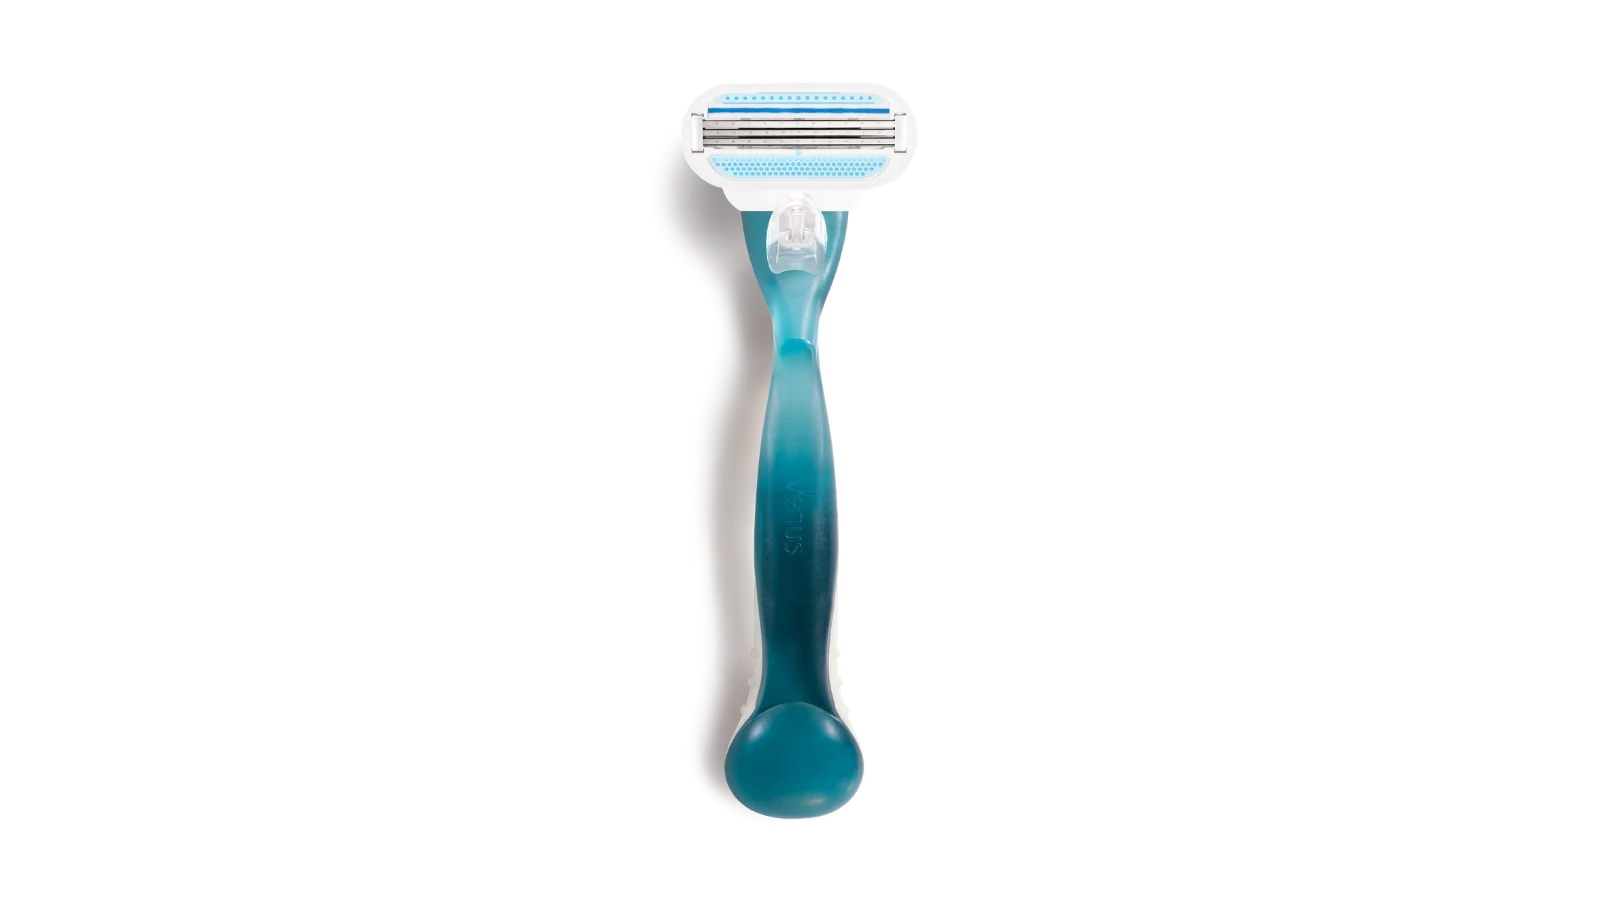 Blue razor with an oval 3 bladed razor head